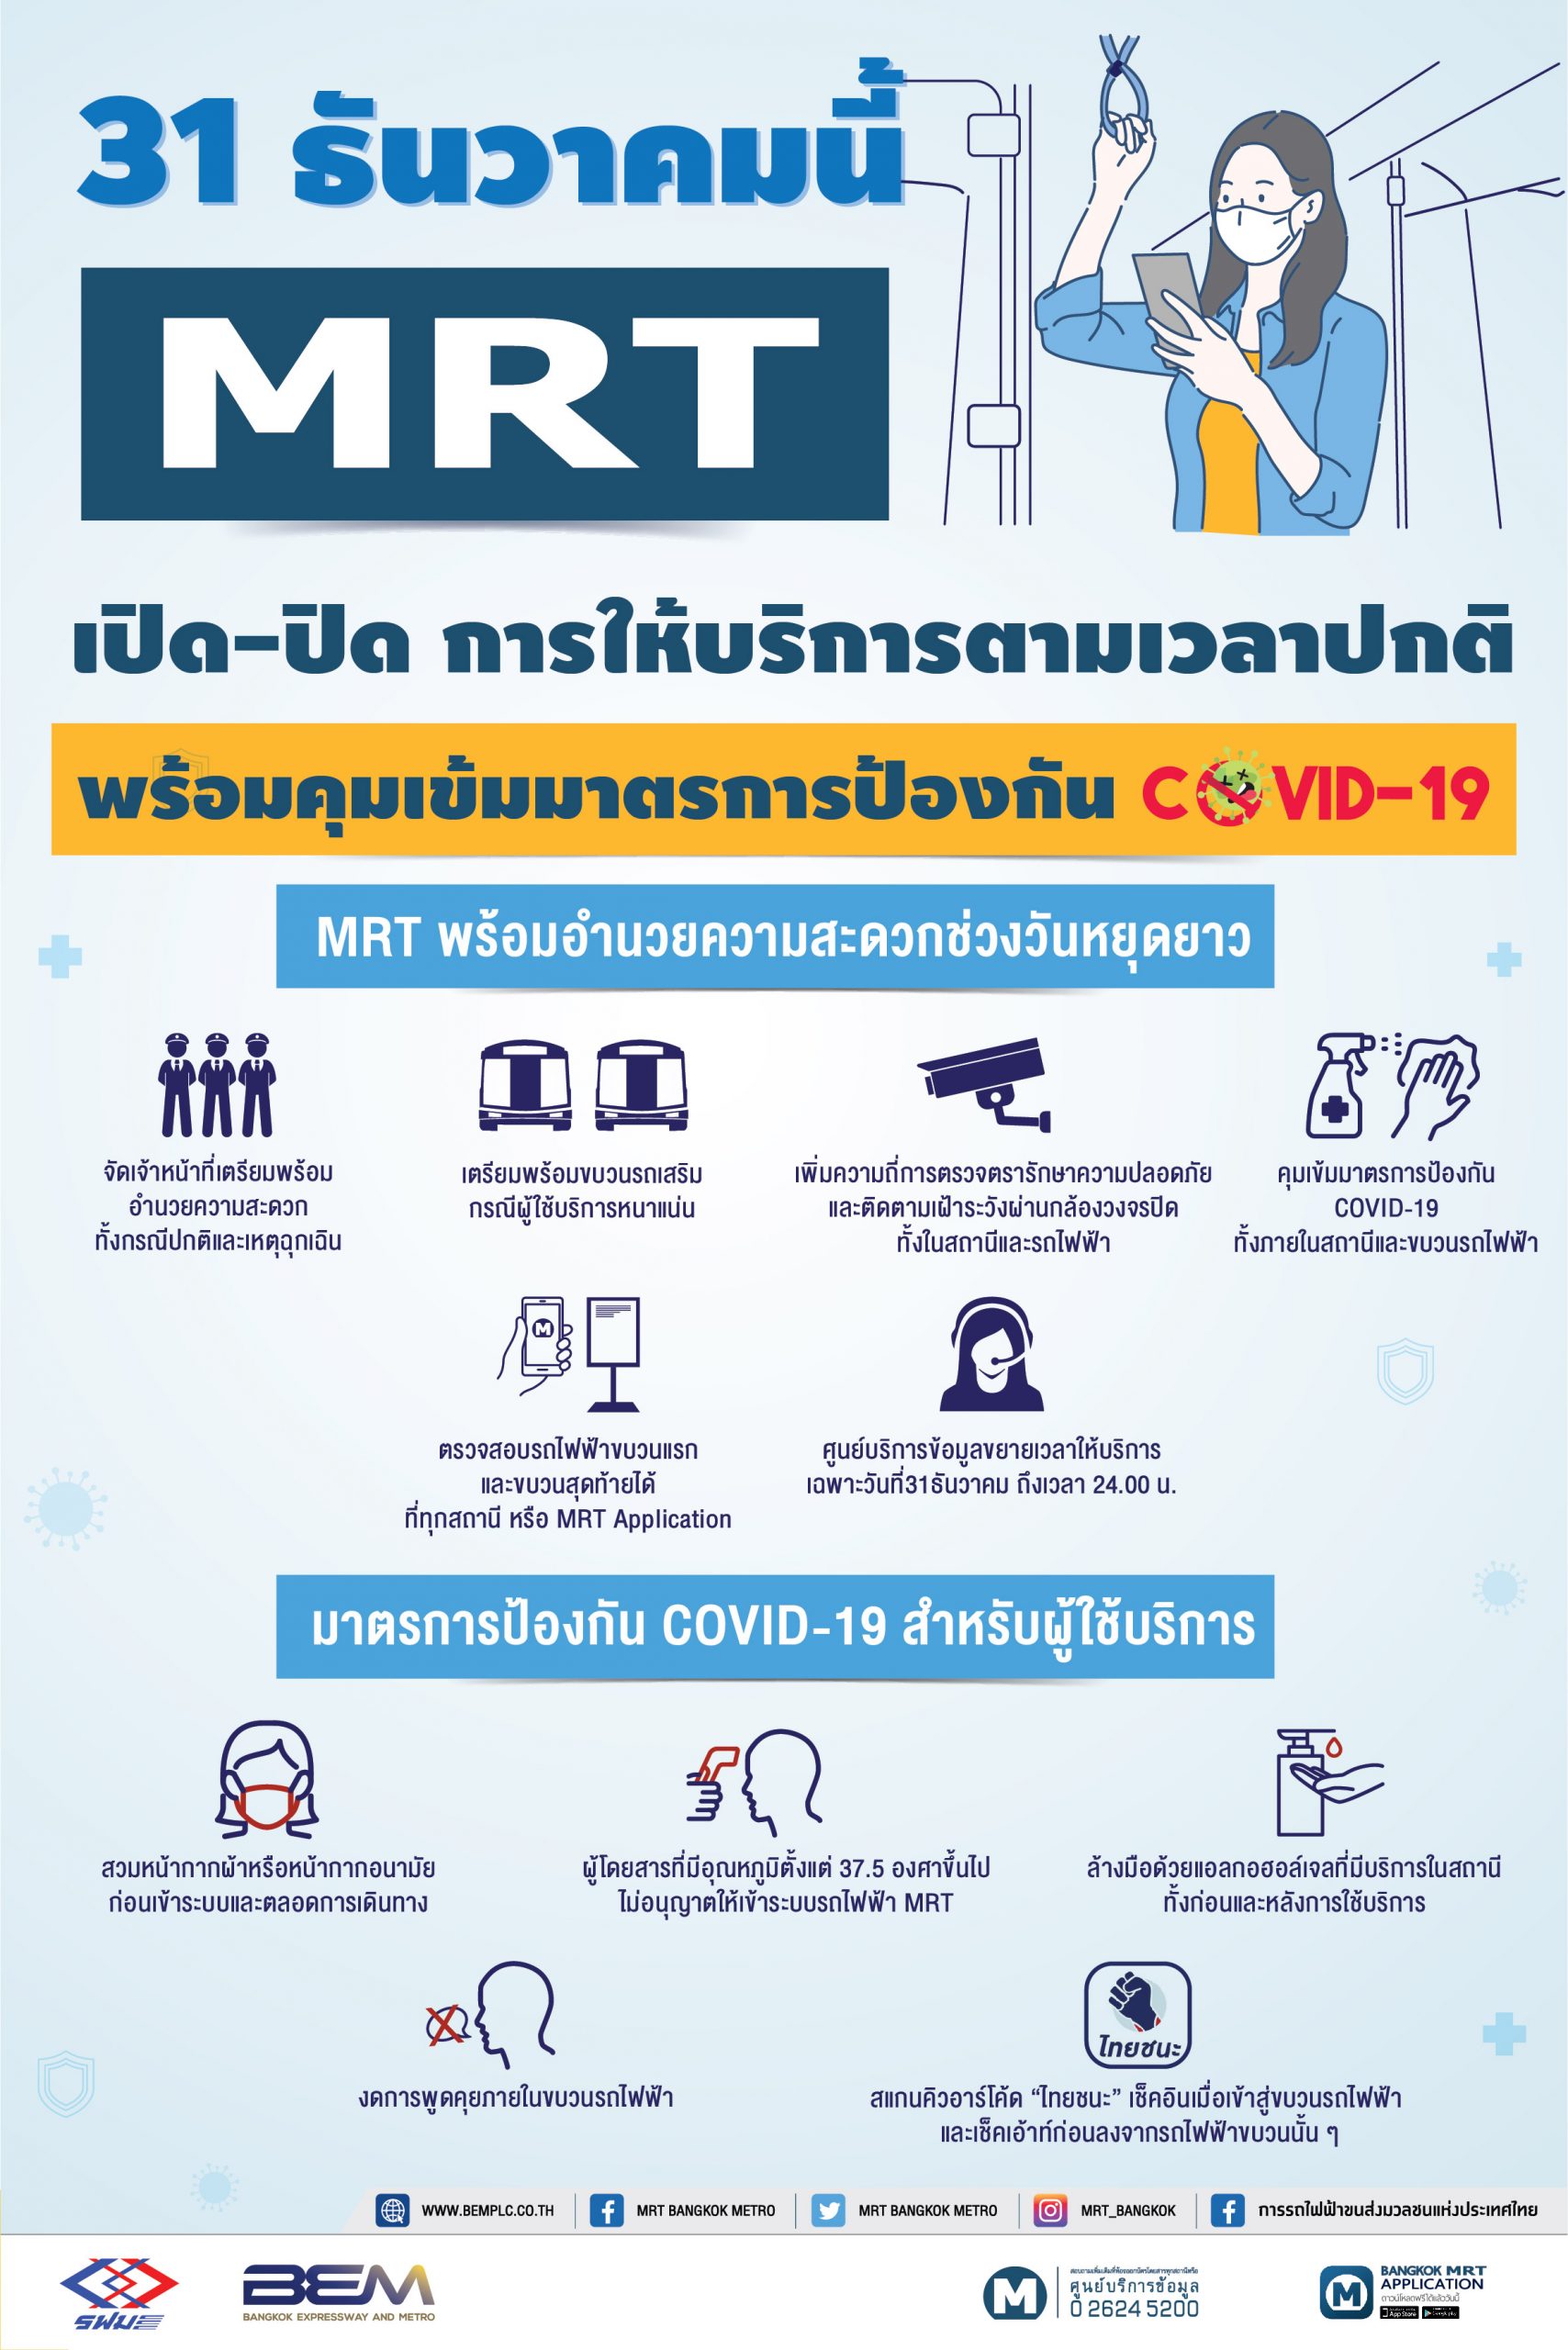 31 ธันวาคมนี้ MRT เปิด-ปิด ให้บริการตามเวลาปกติ พร้อมคุมเข้มมาตรการป้องกัน COVID-19